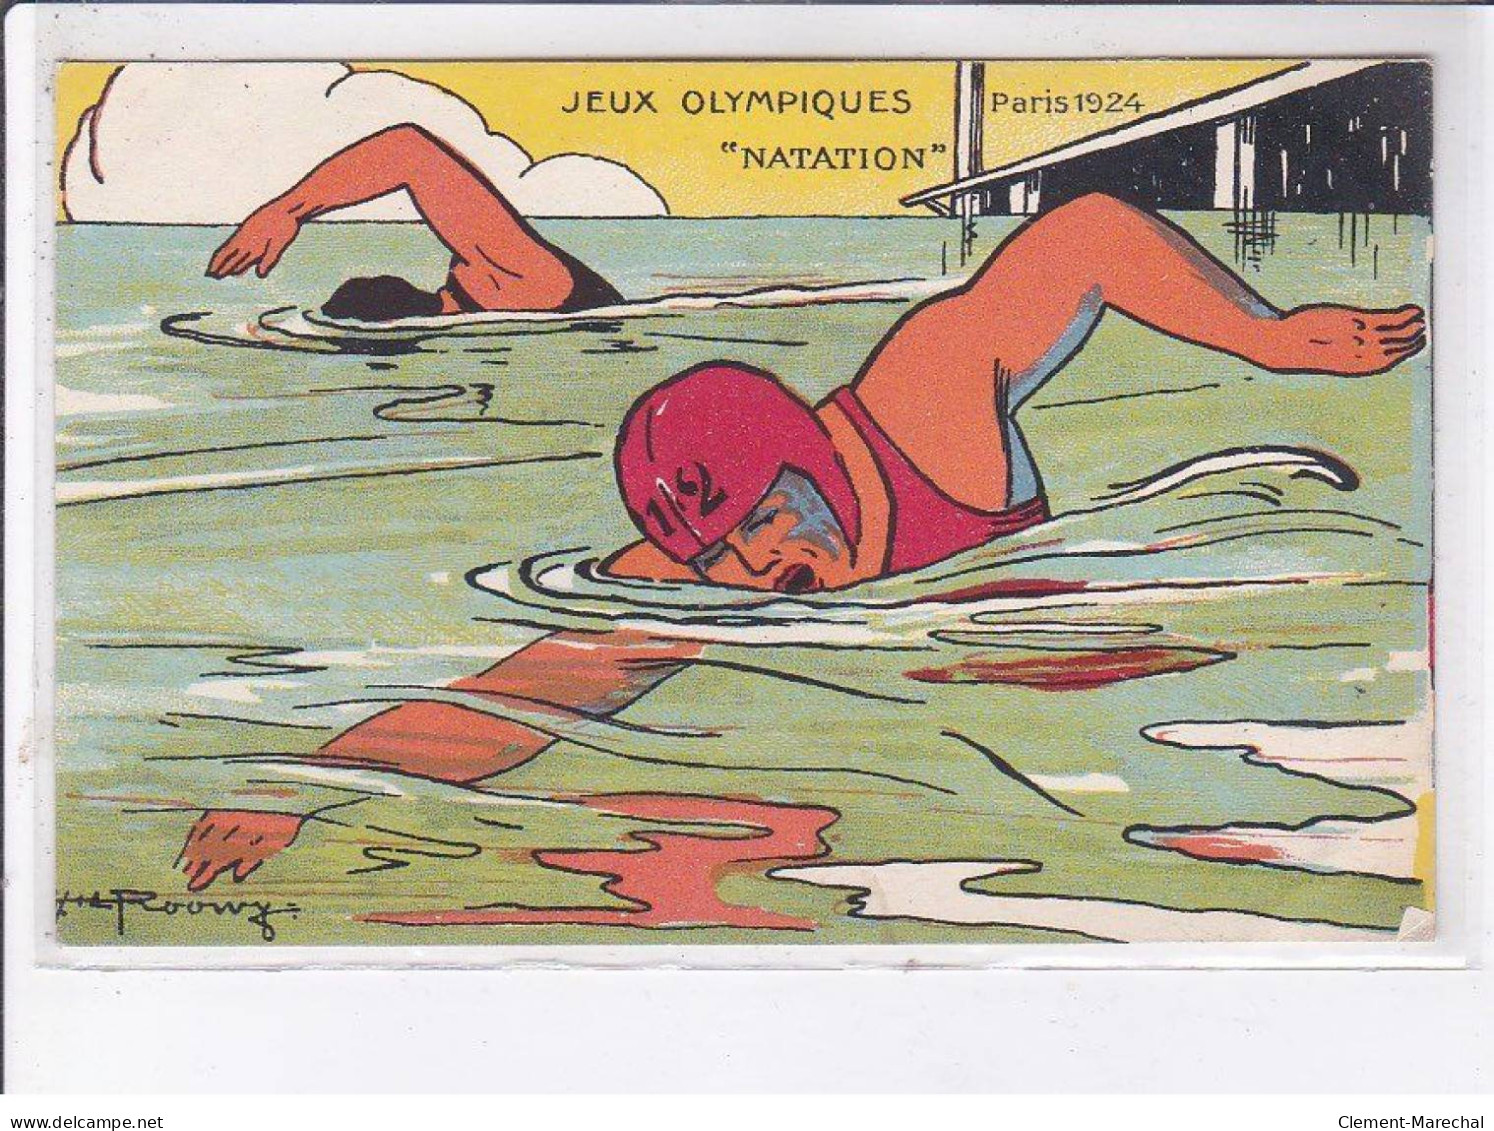 PARIS: 1924, jeux olympiques, boxe, rouwy, 10CPA - très bon état